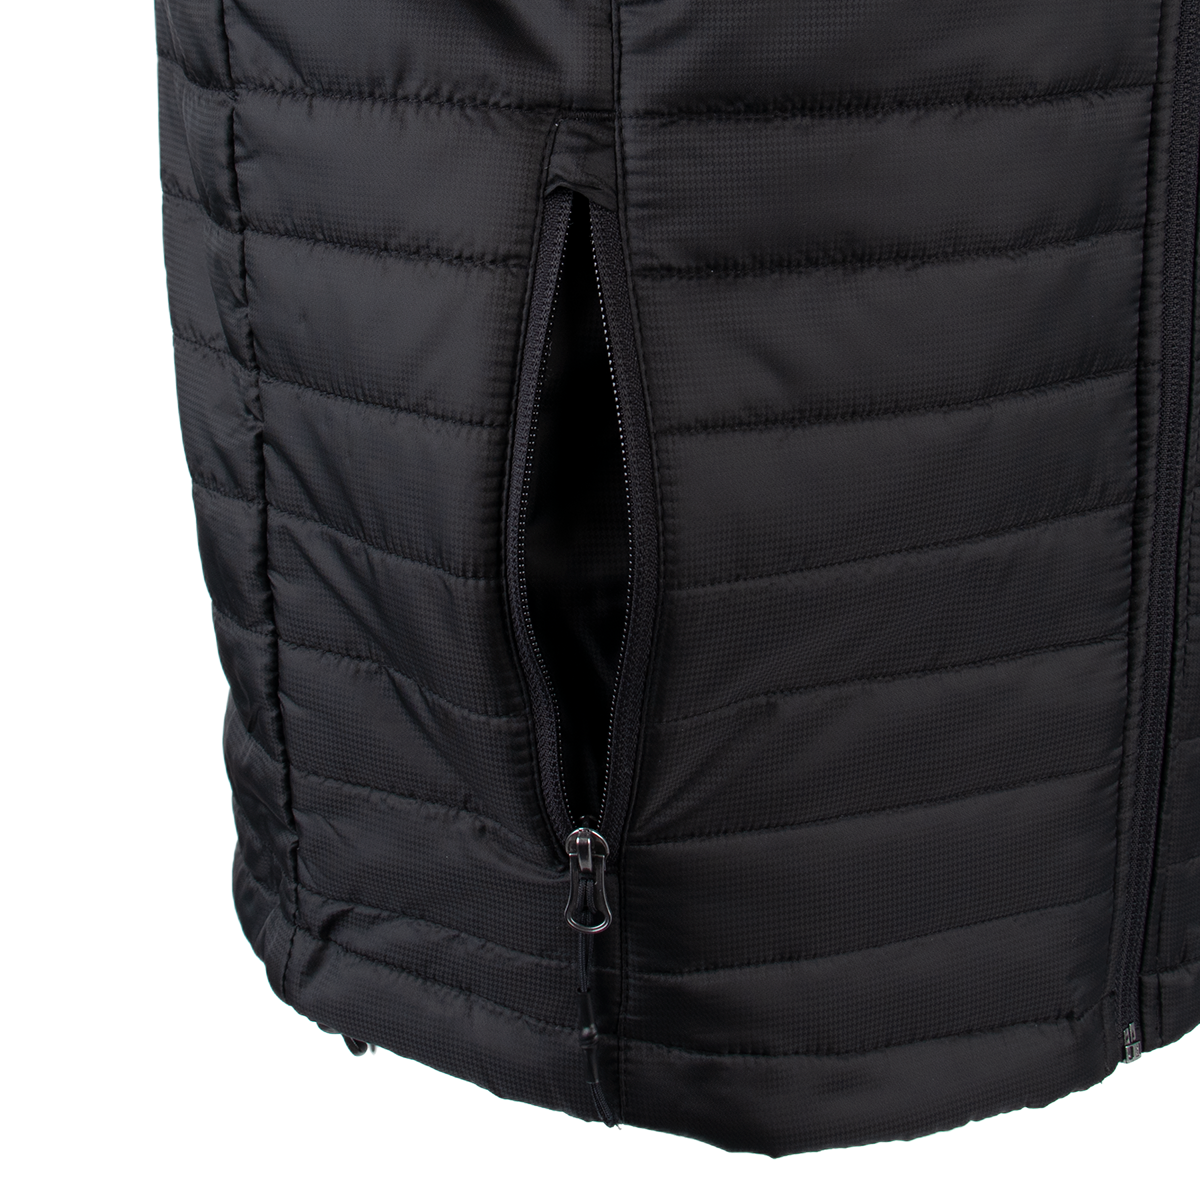 KSP-111 | Men's Packable Puffy Vest - Deep Black – King City Heartbeats